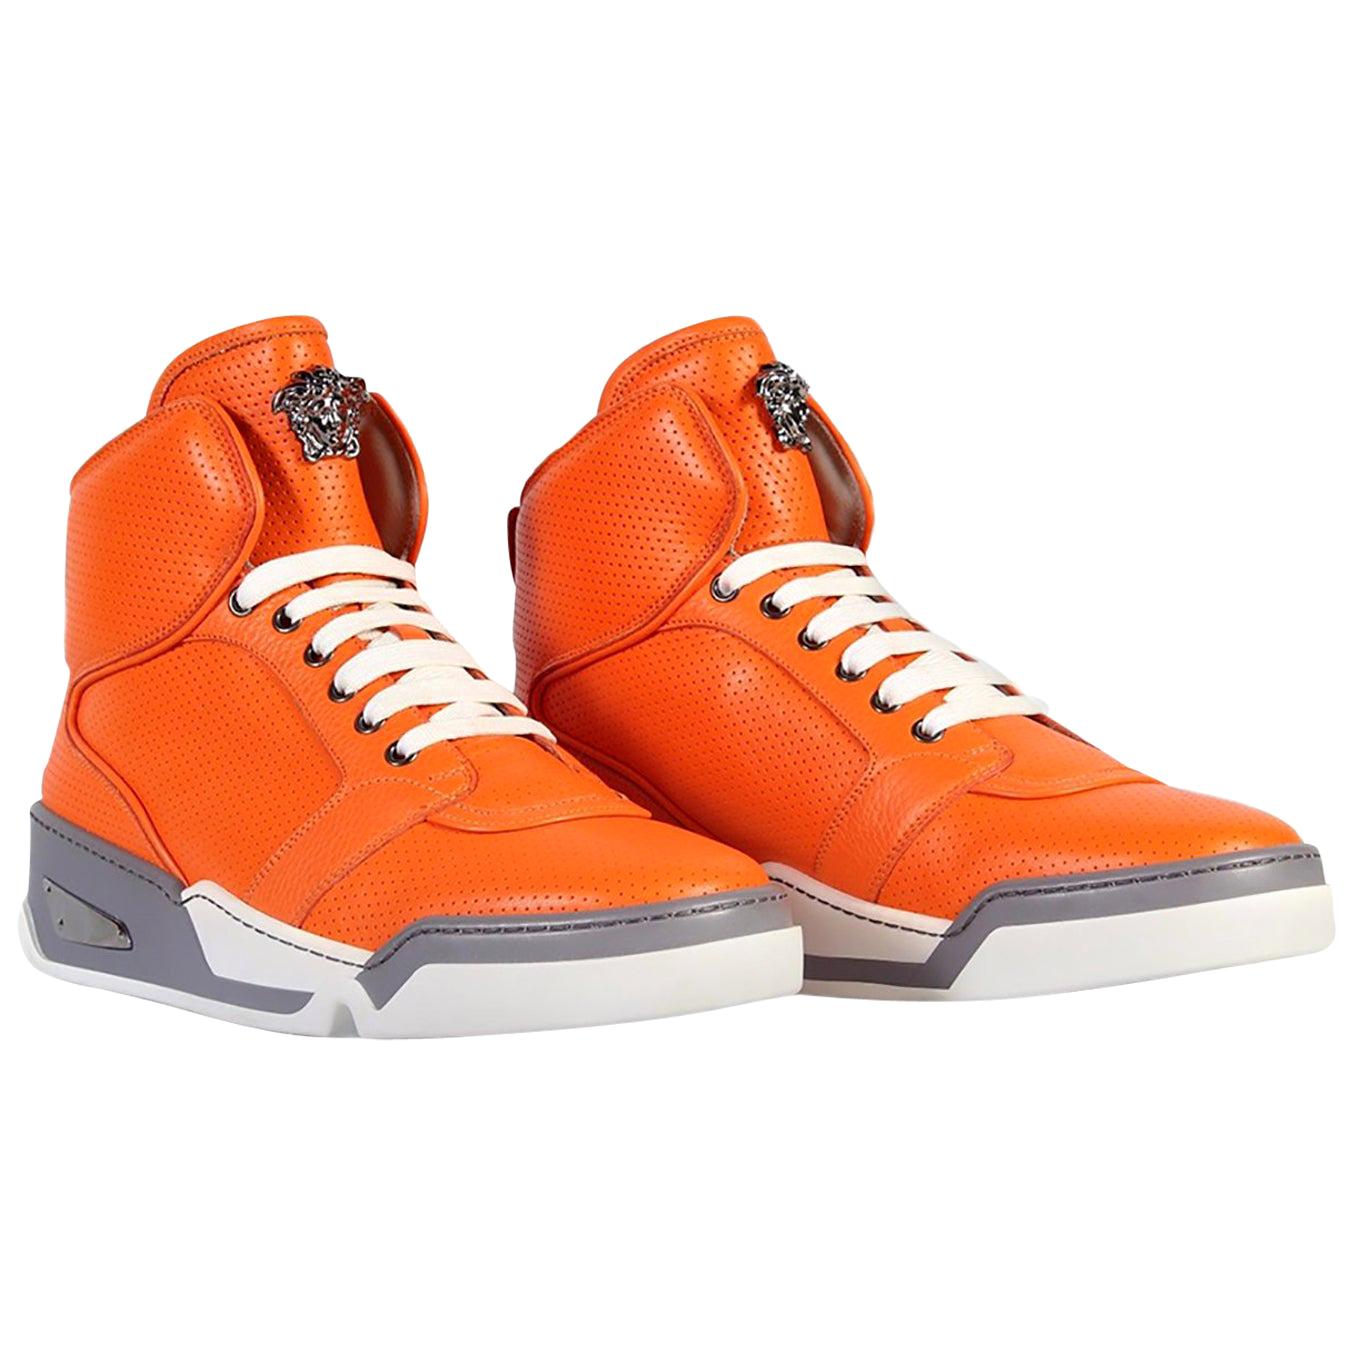 Versace Versus Mens Multi-Color Leather Fashion Sneakers Shoes Sz US 10 IT 43